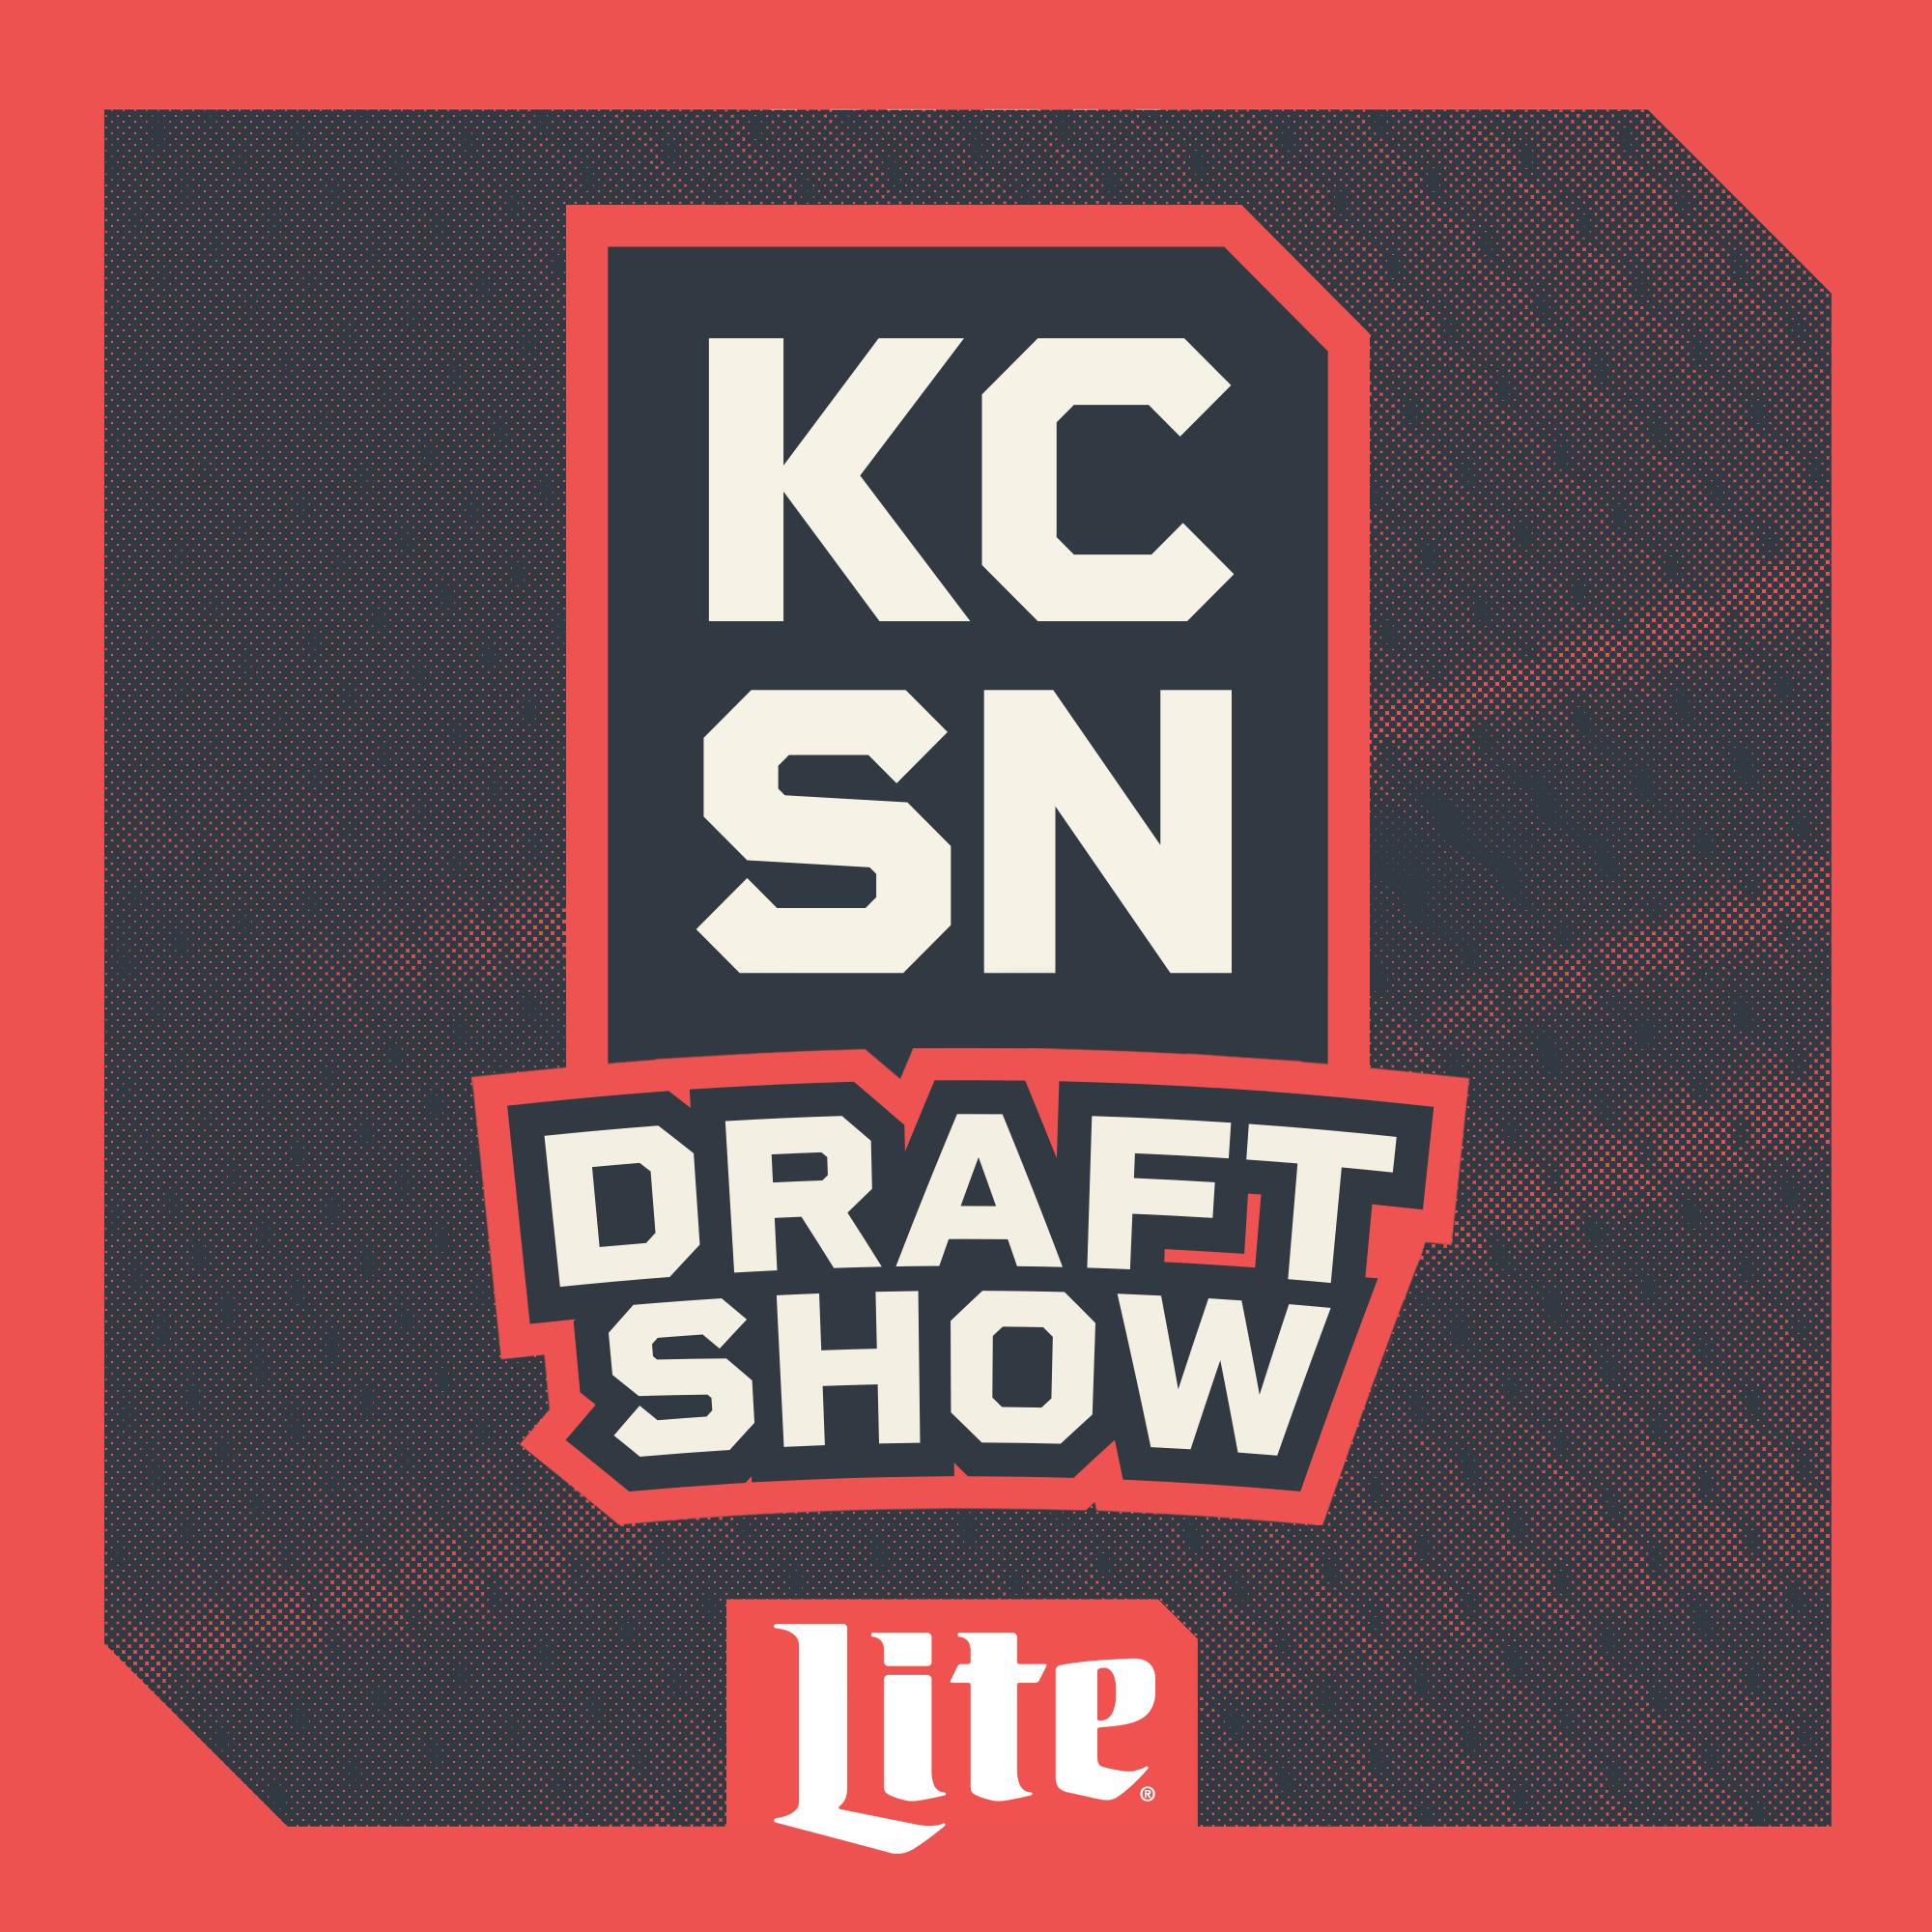 KCSN Draft Show 4/13: Latest 2023 NFL Draft Buzz, News & Rumors with ESPN's Matt Miller